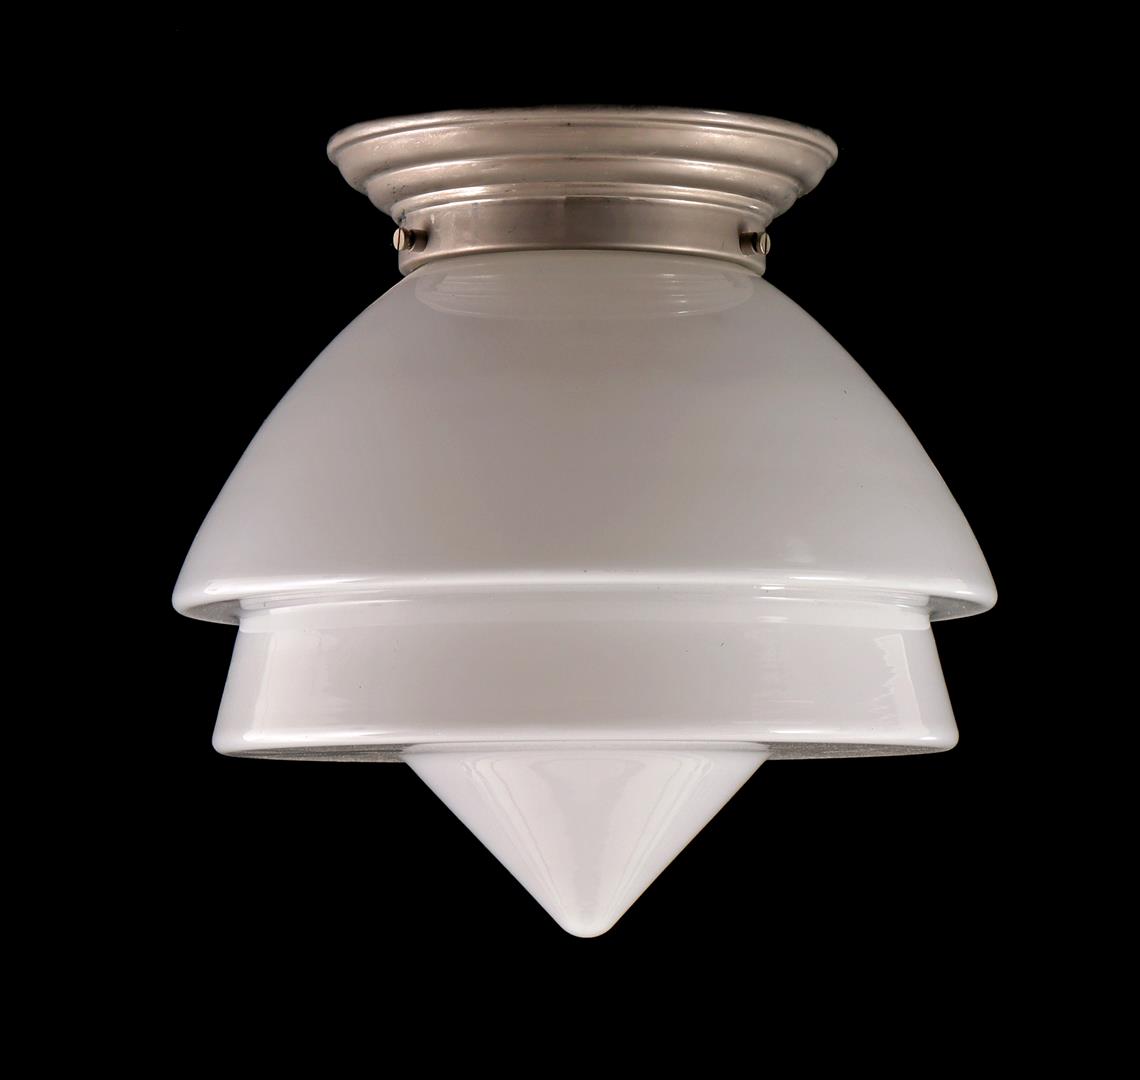 Gispen ceiling lamp